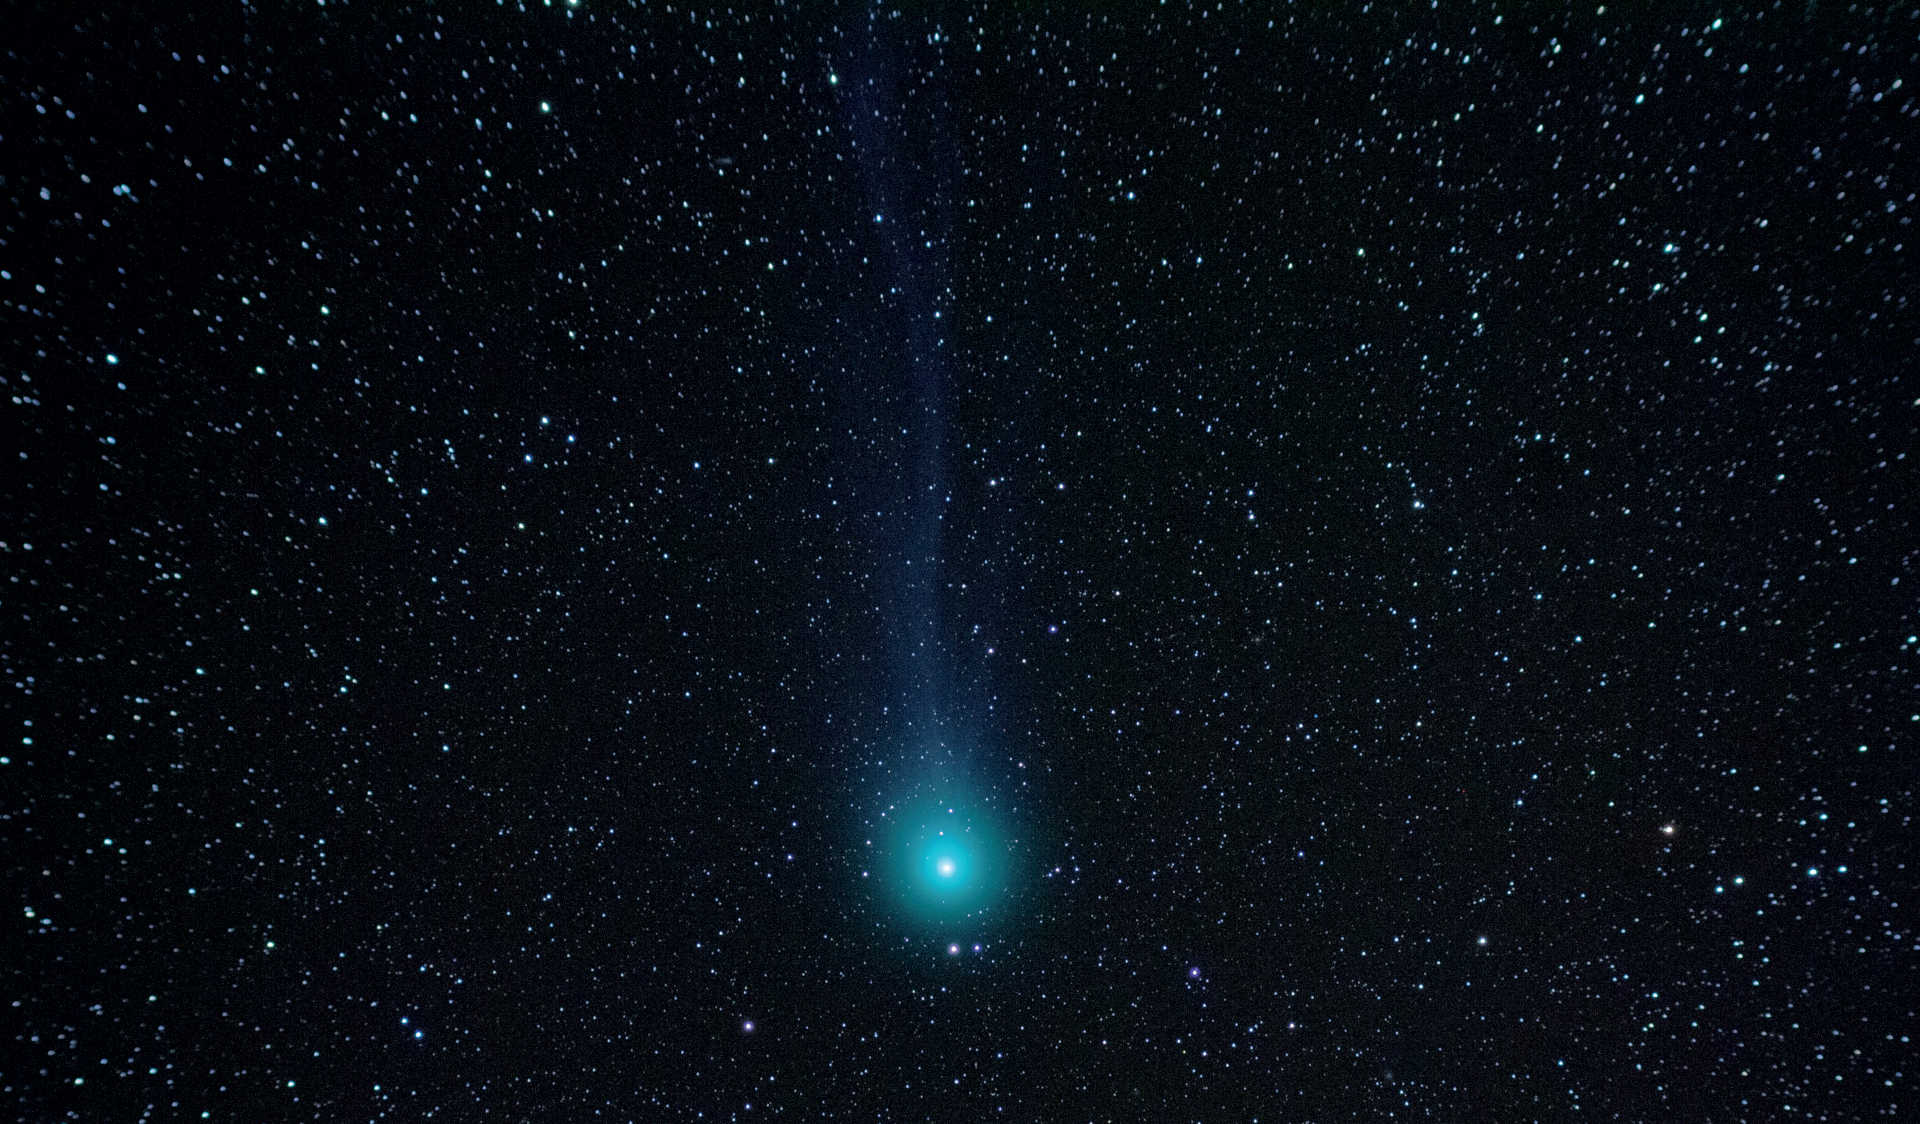 O provocare deosebită a fotografierii cometelor este aceea de a face vizibilă coada cometei. În această imagine din data de 7 februarie 2015, cometa C/2014 Q2 (Lovejoy) apare cu o coadă slabă. Fotografia a fost realizată cu un DSLR Canon montat pe un Takahashi FS-60 (distanța focală: 355 mm; F/5,9). Imaginea compusă este alcătuită din cinci imagini, cu un timp de expunere de 120 de secunde fiecare. U. Dittler